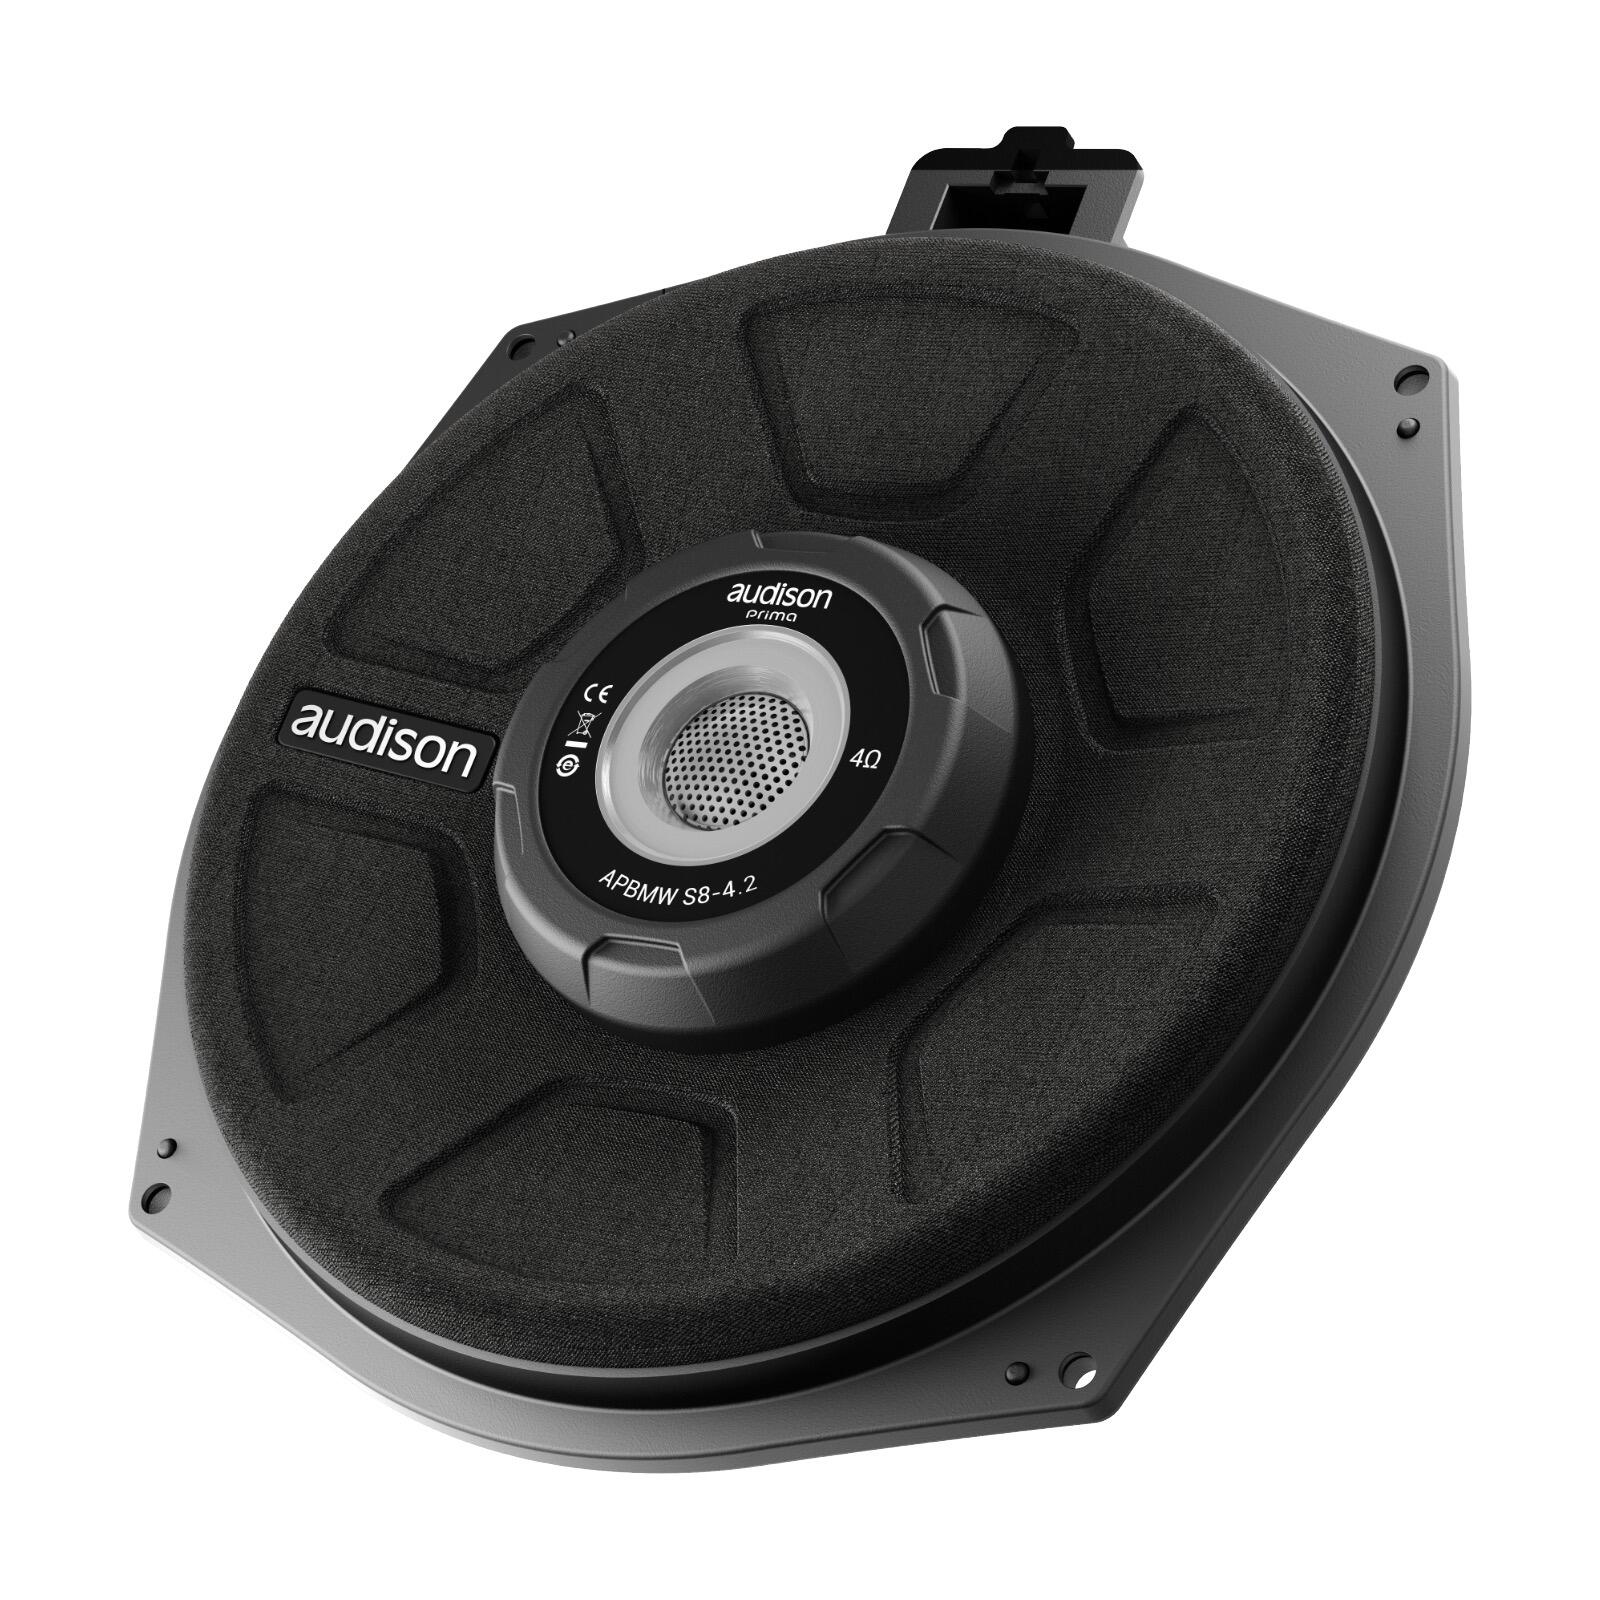 Audison Prima APBMW S8-4.2 Single 4ohm Plug & Play Under Seat Subwoofer BMW 150w